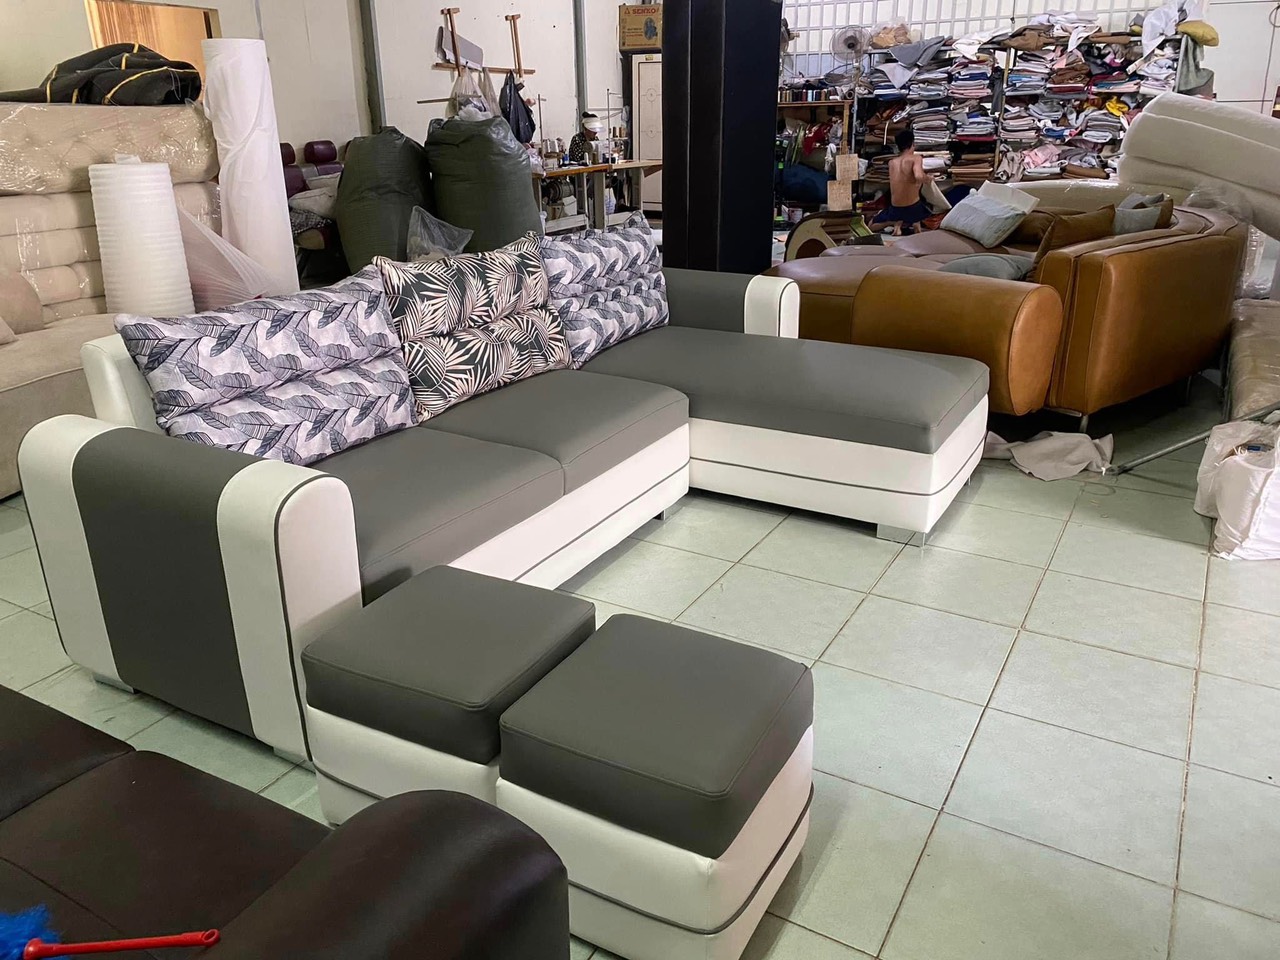 Sofa góc giá xưởng Juno Sofa 2m6 x 1m6 tặng 2 đôn vuông.